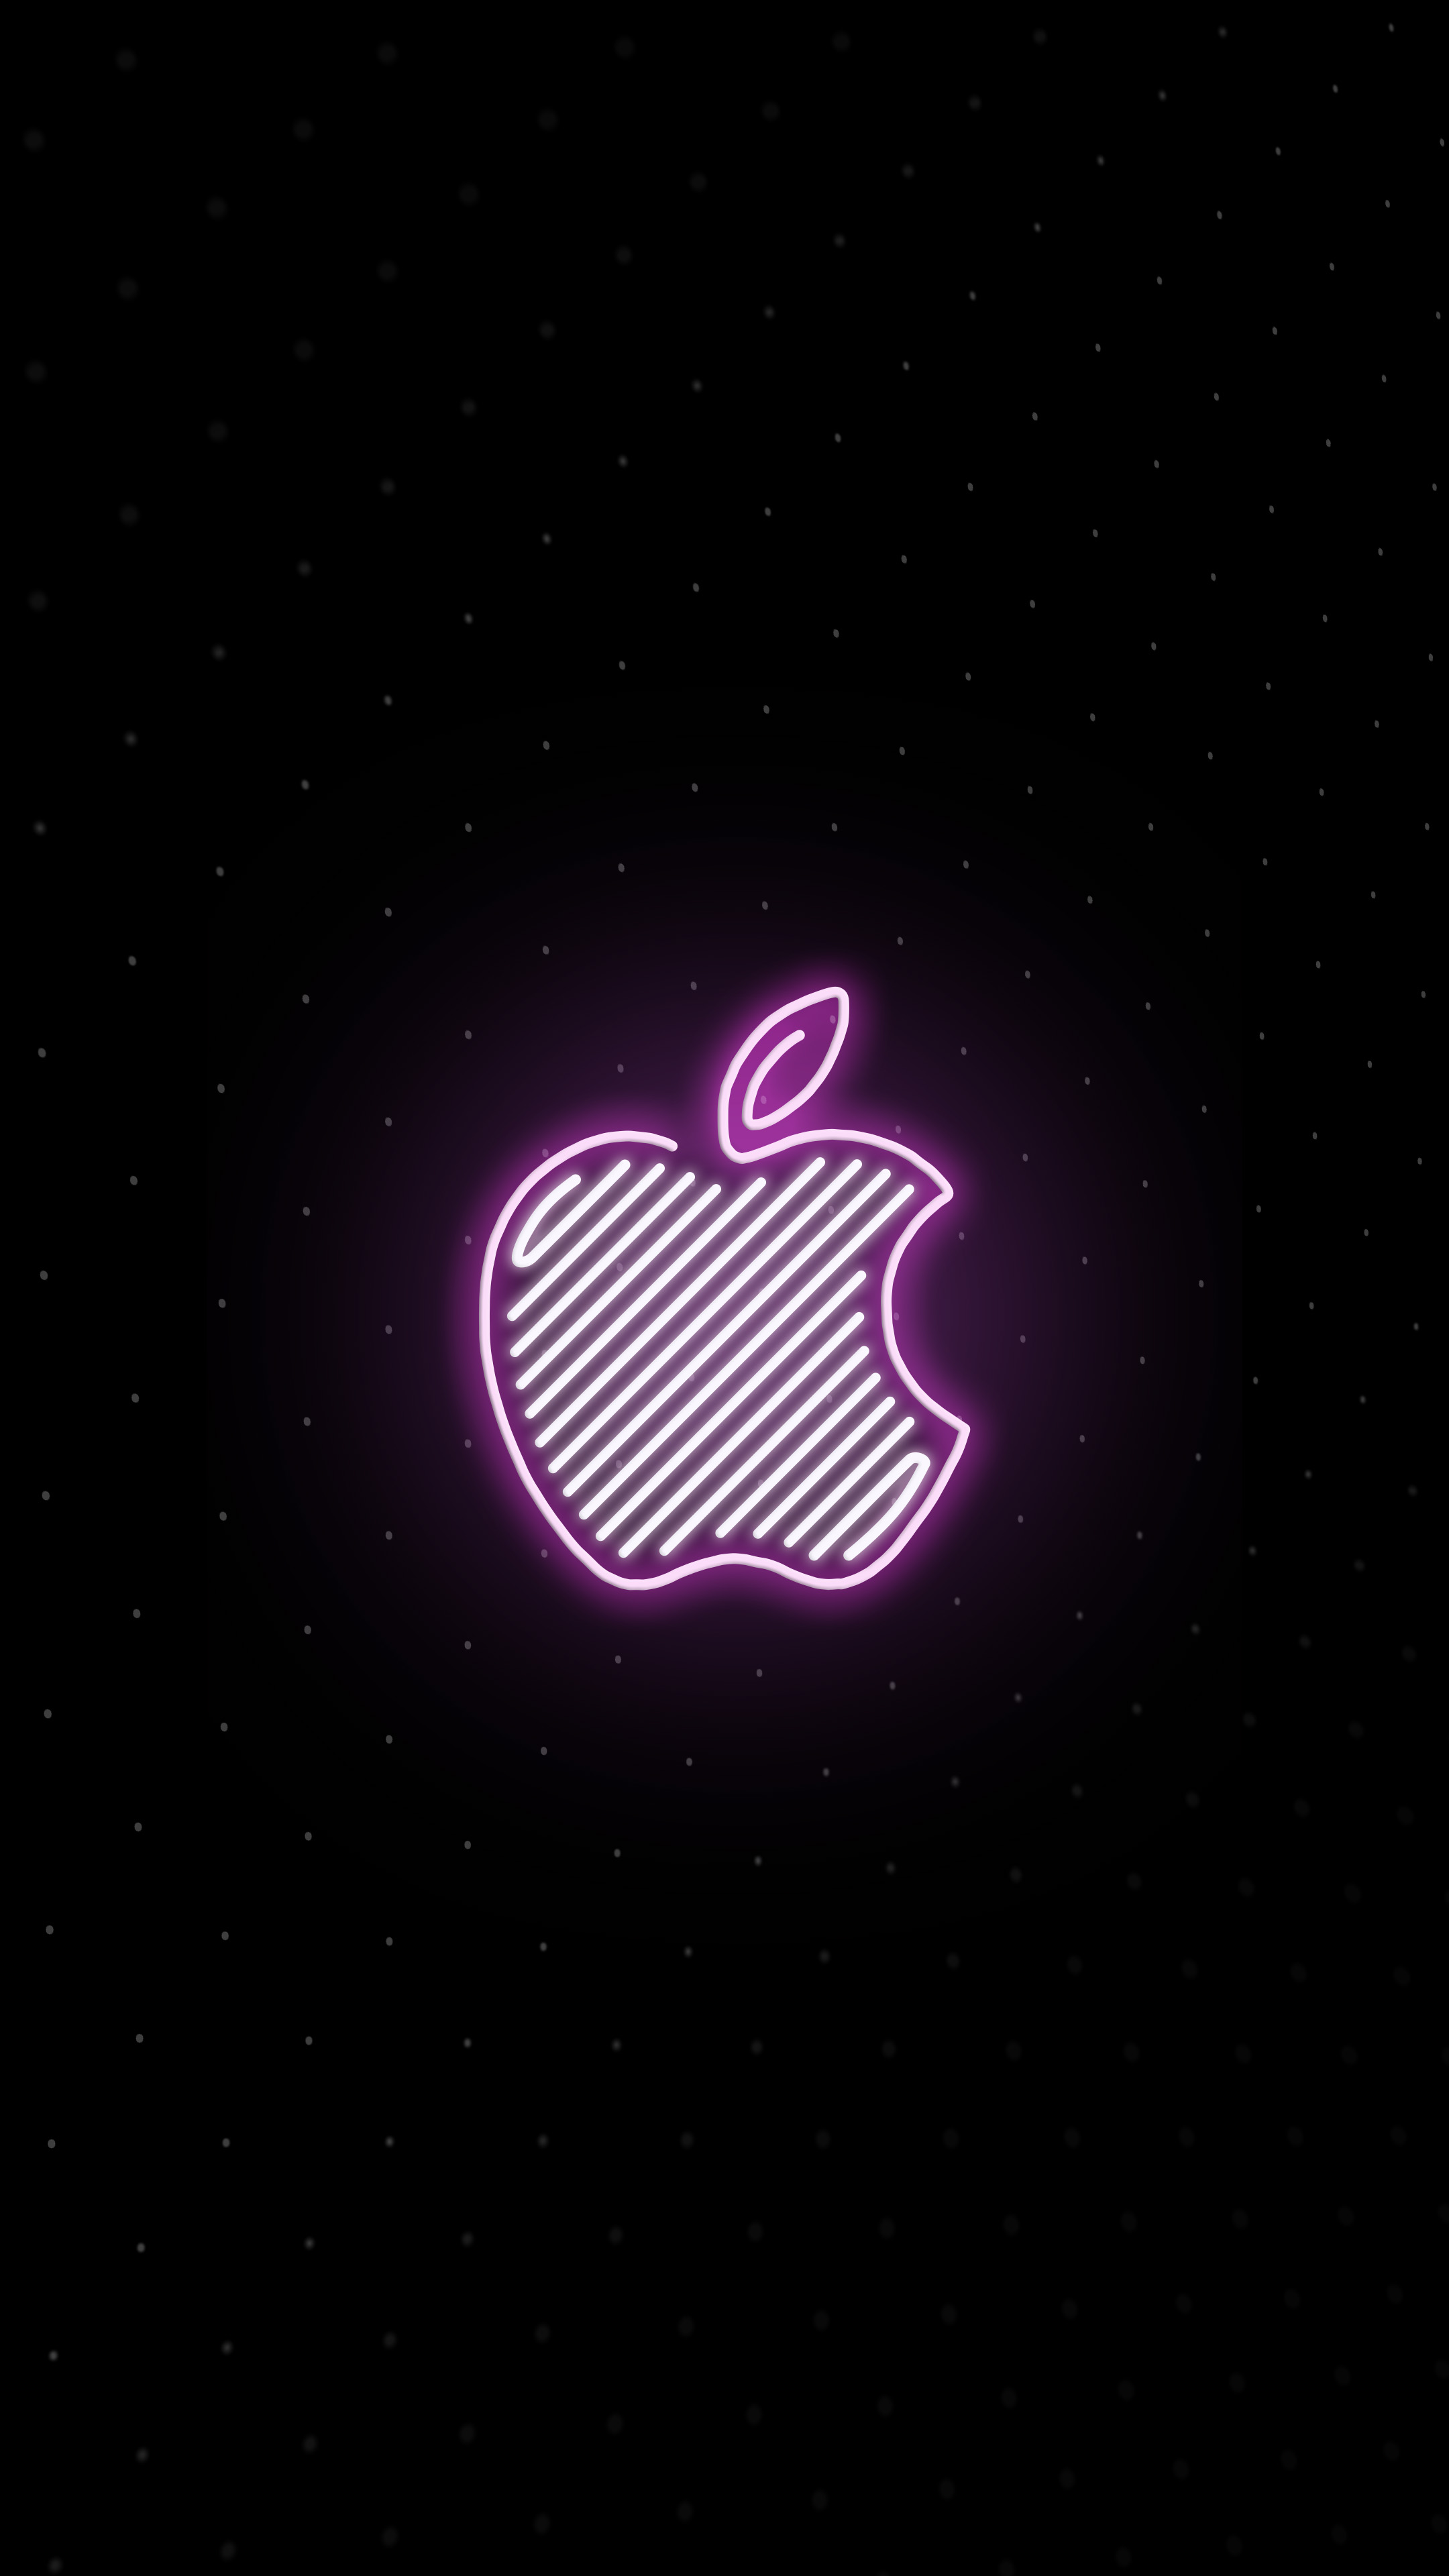 新オープンの Apple Store 新宿 のロゴにインスパイアされたiphone Mac用壁紙 5枚 噂のappleフリークス